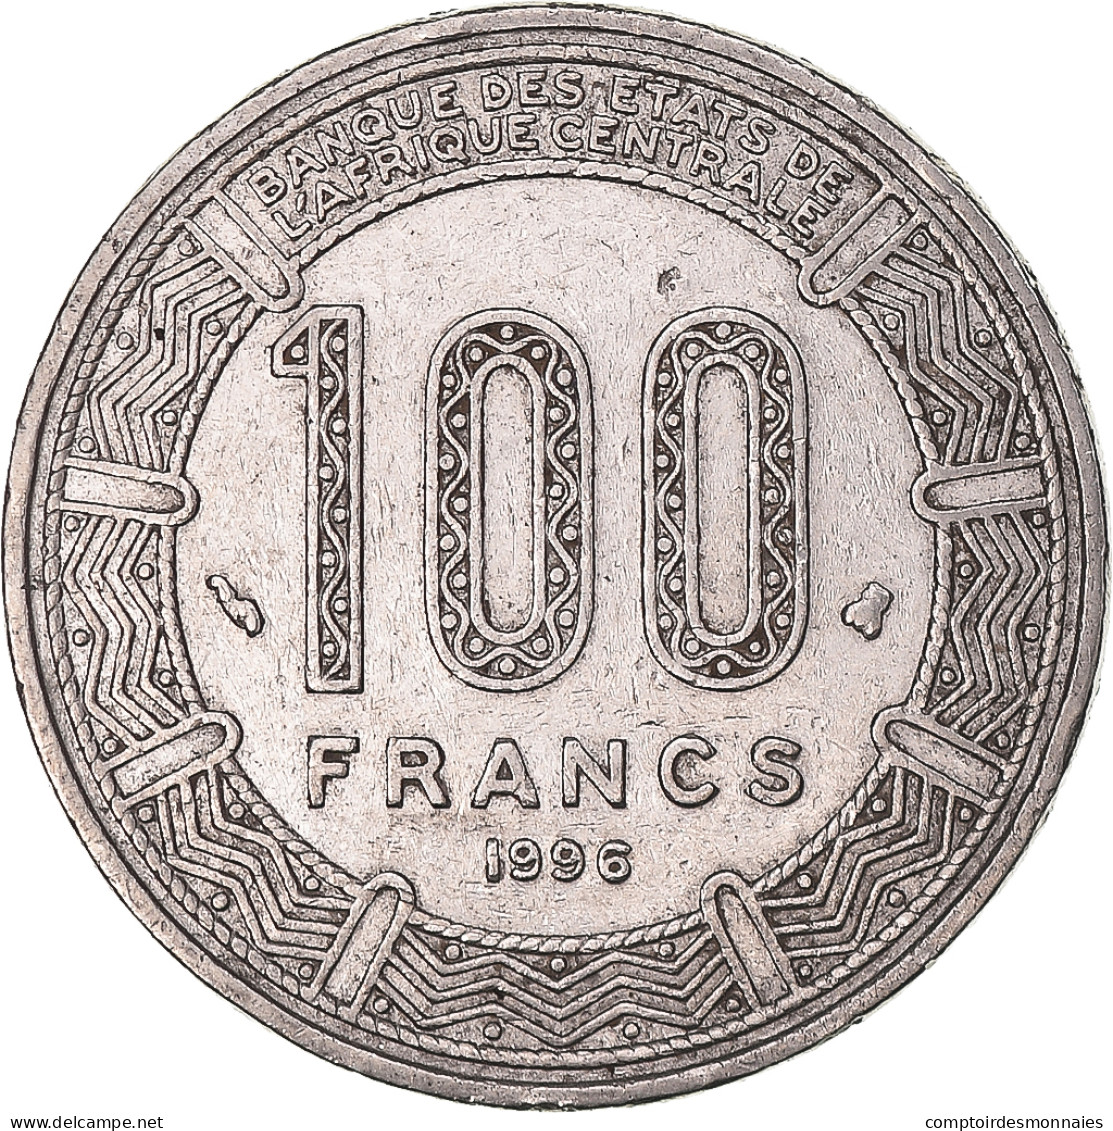 Monnaie, États De L'Afrique Centrale, 100 Francs, 1996 - Central African Republic